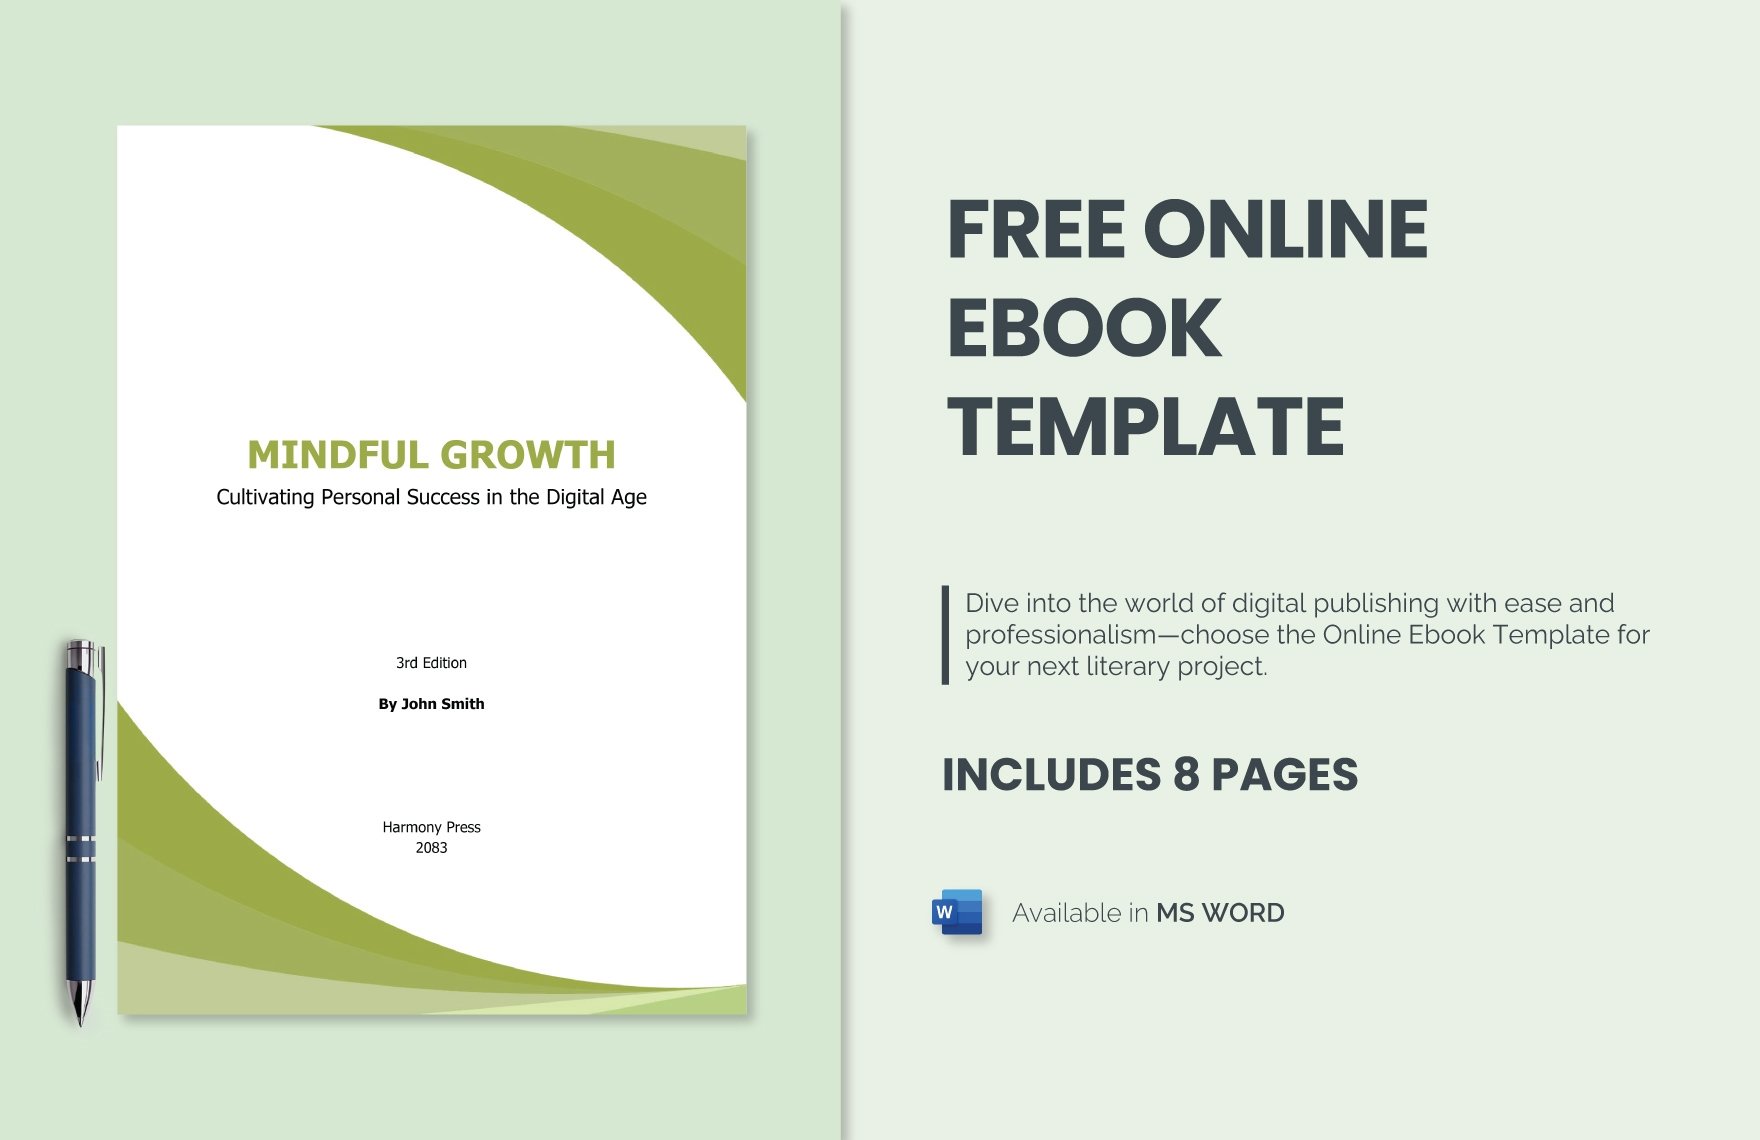 Free Online Ebook Template in Word, PDF